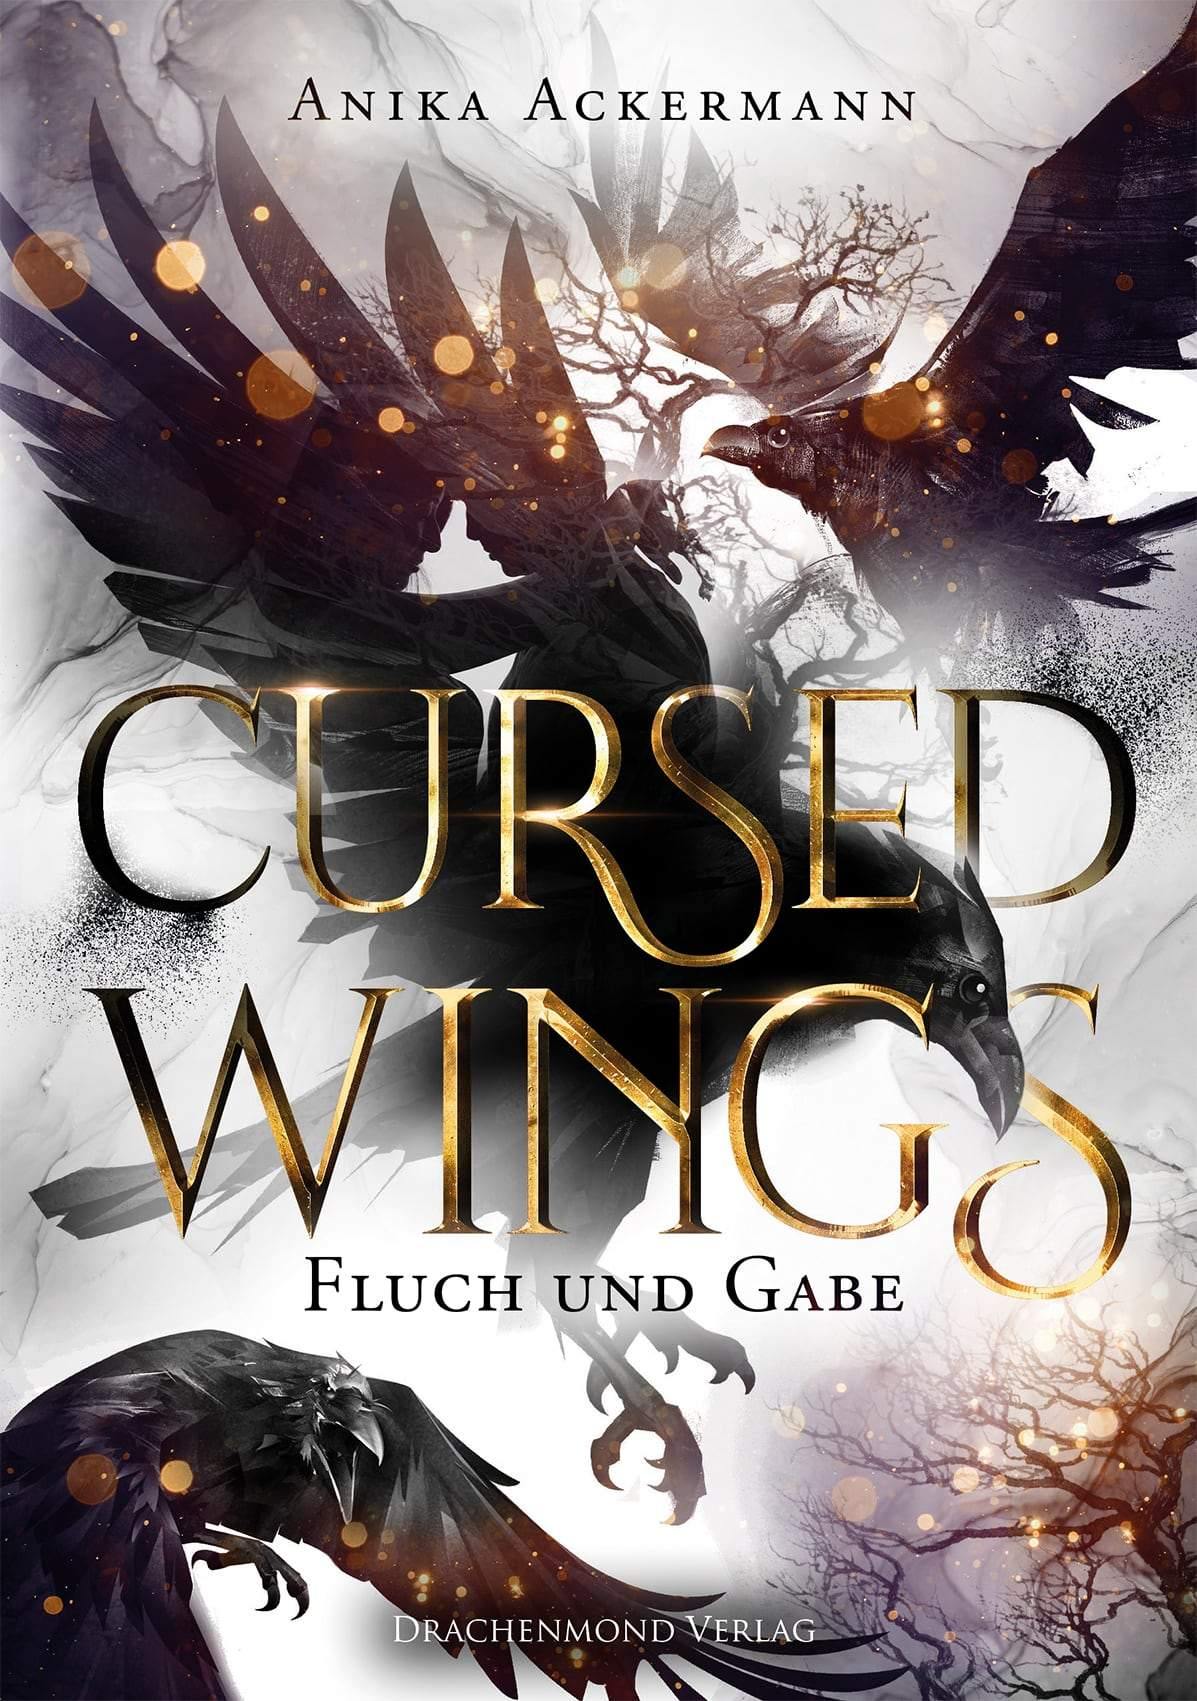 Cursed Wings - Fluch und Gabe - Anika Ackermann | Drachenmond Verlag